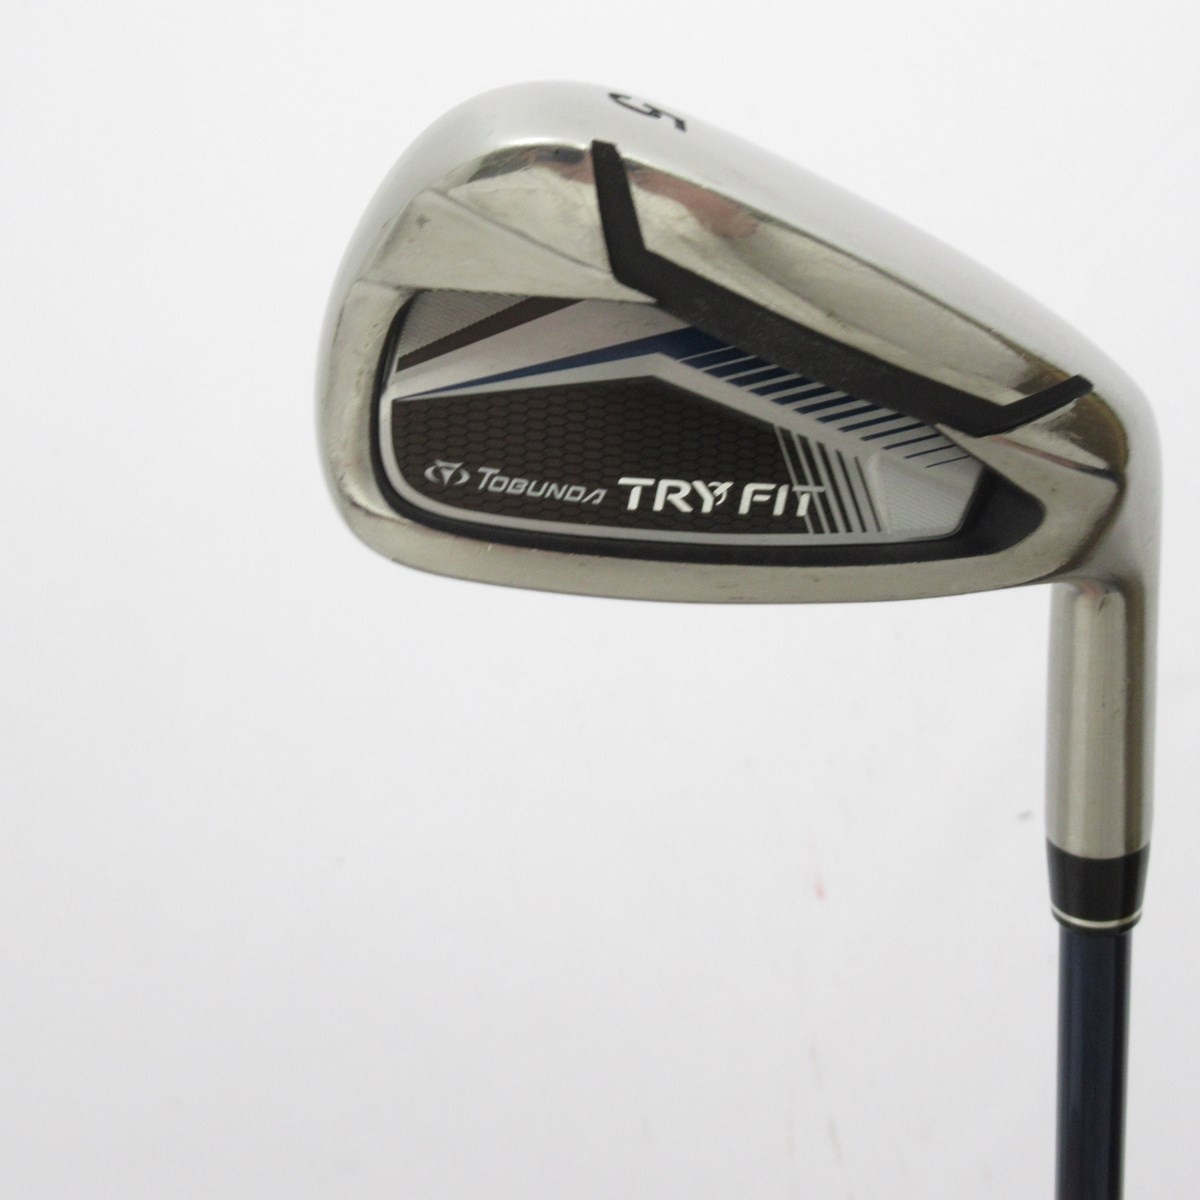 ゴルフ ゴルフプランナー TOBUNDA TRY FIT(2015) アイアン TF505i(アイアンセット)